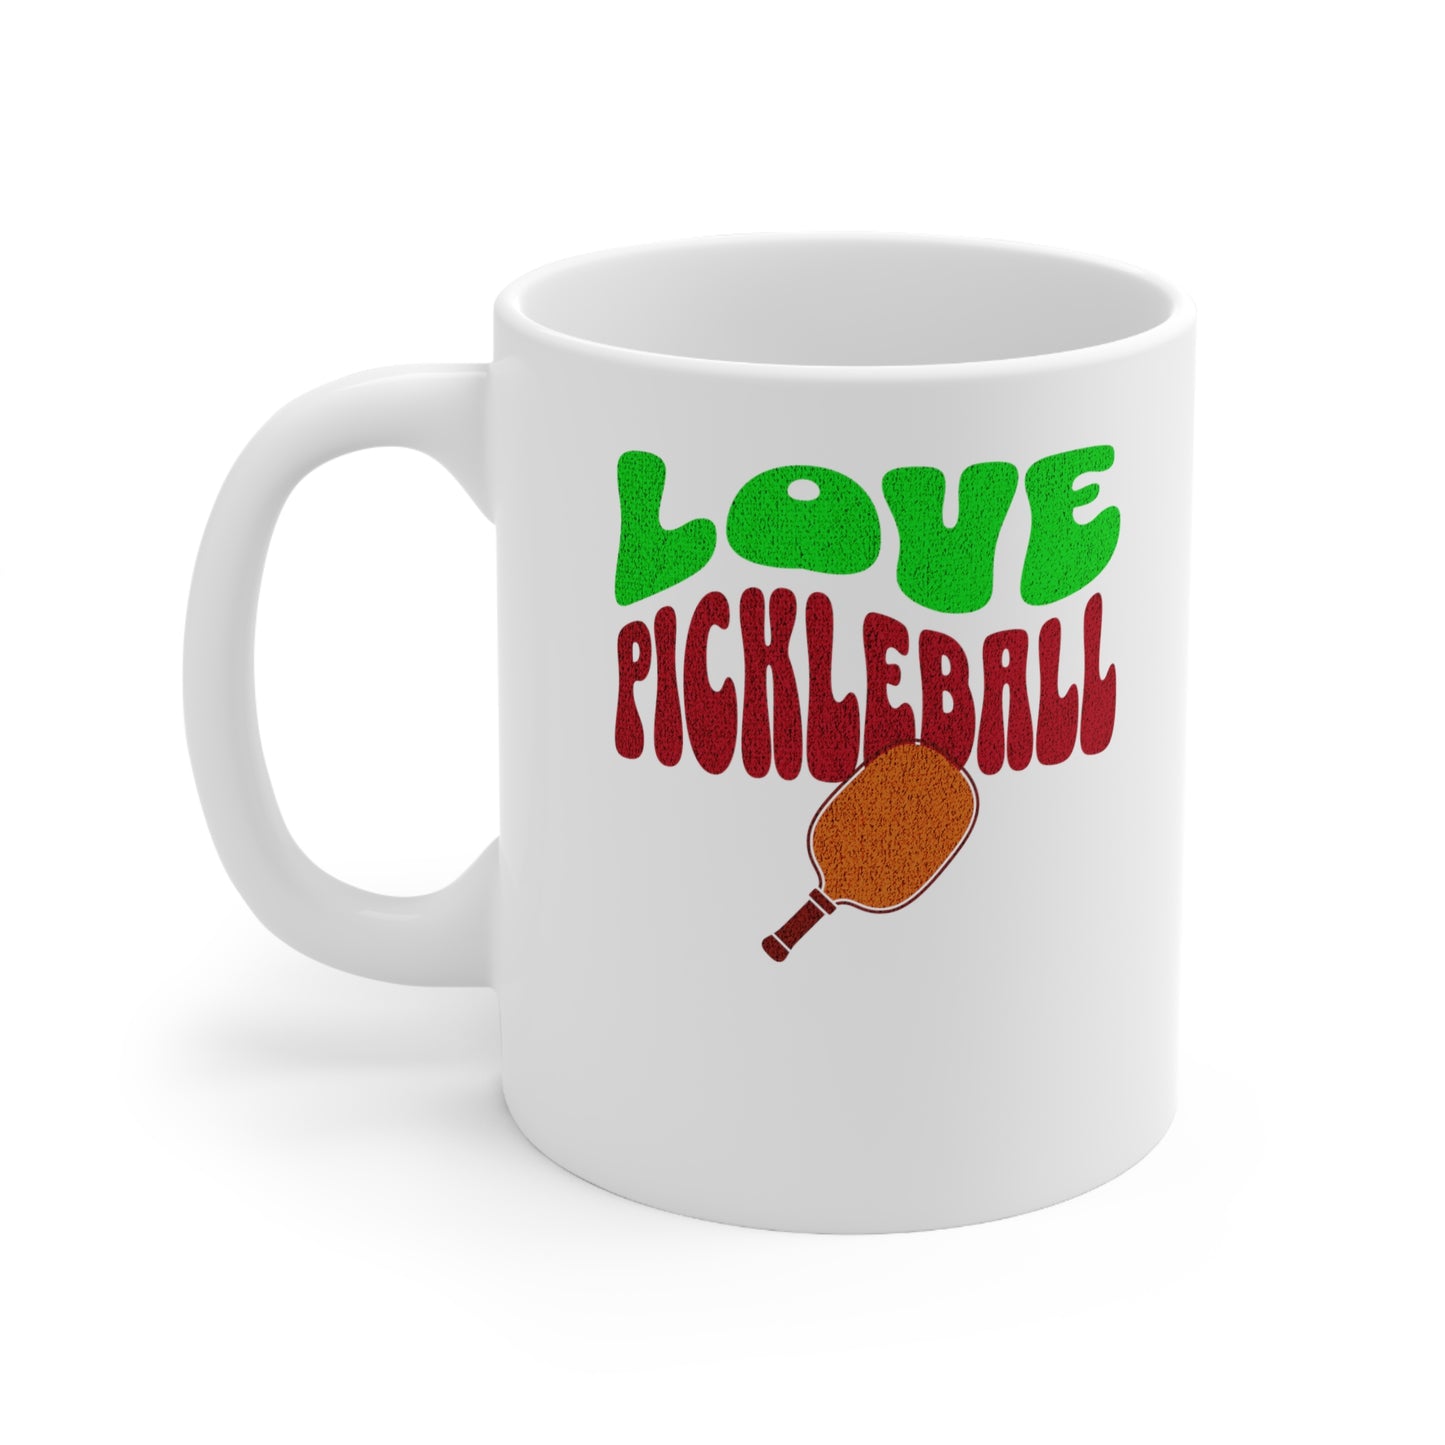 Pickleball Passion Coffee Mug